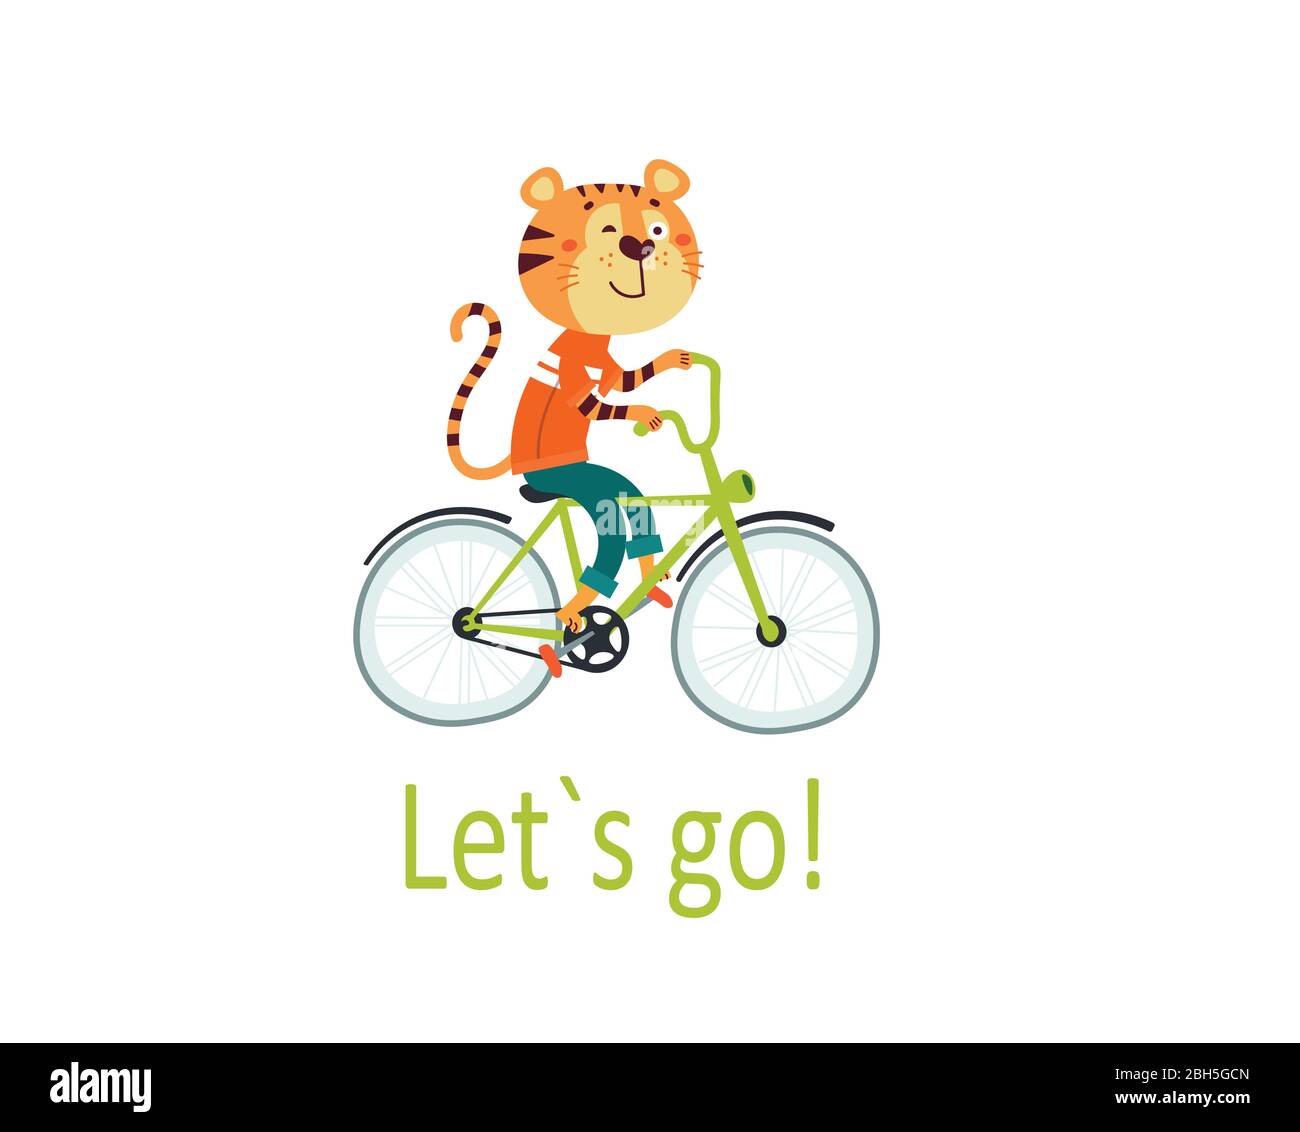 Le joli tigre africain à vélo va pour une promenade. Carte pour enfants,  autocollant, invitation pour la fête, imprimé pour vêtements pour bébé  Image Vectorielle Stock - Alamy